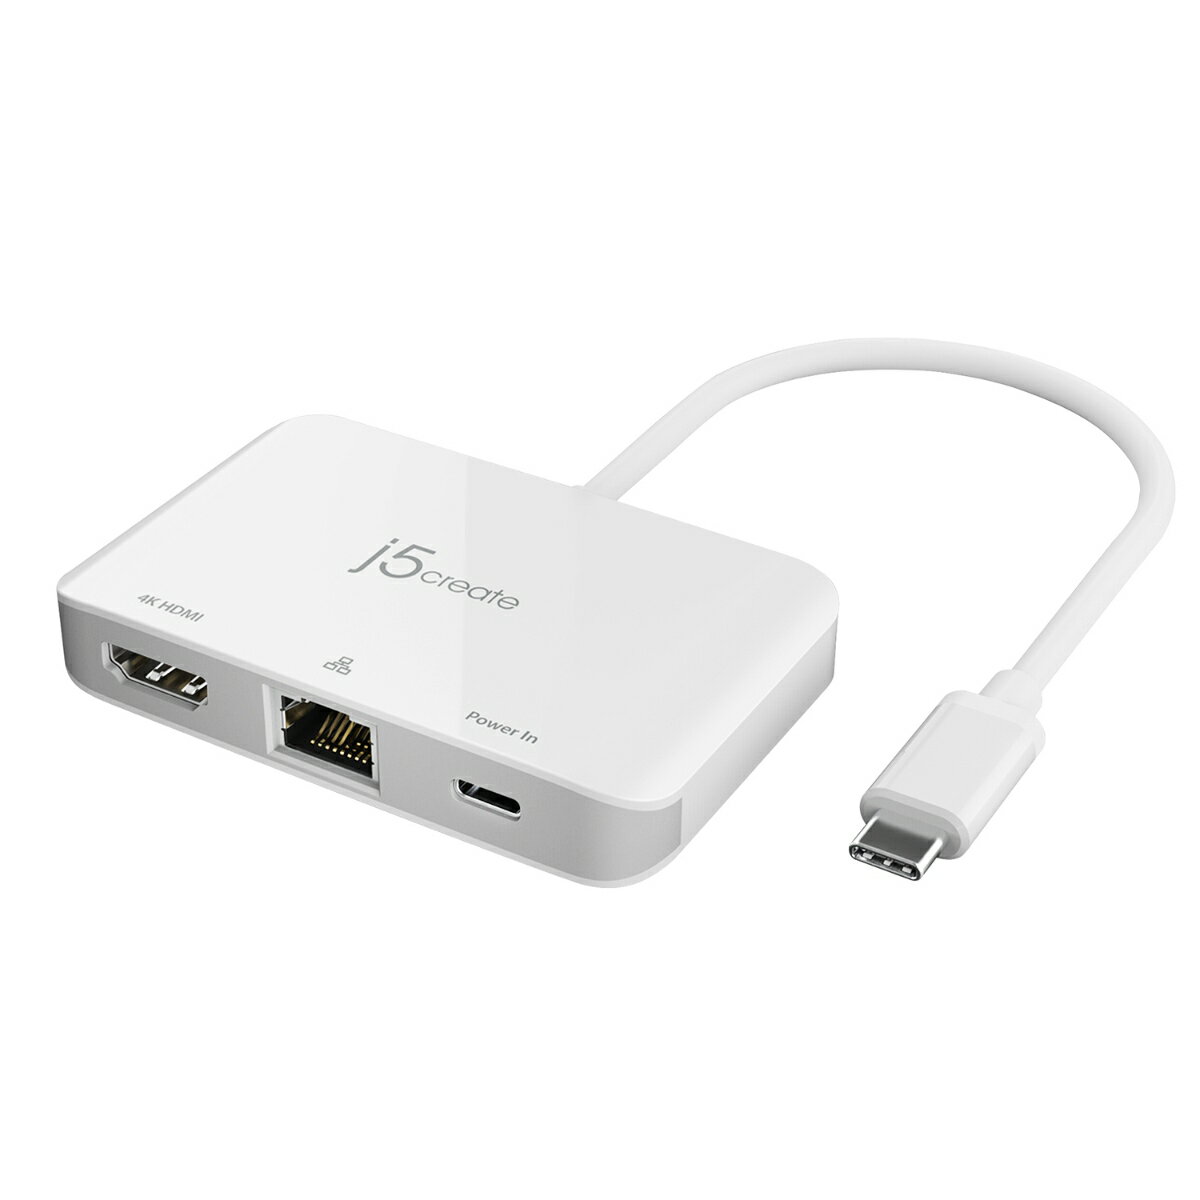 USB Type-Cを備えたパソコン、タブレット、スマートフォンから3種類端子（有線LAN、HDMI、PD充電）を変換できる3in1マルチアダプターです。別売りのPD充電器を本機を通じて端末に充電しながら、HDMI大画面を増設して、安定した有線LANケーブル接続することができます。コンパクトな筐体に3つのケーブルを一台に集約して、会社、自宅、出張先までも便利性の高い製品です